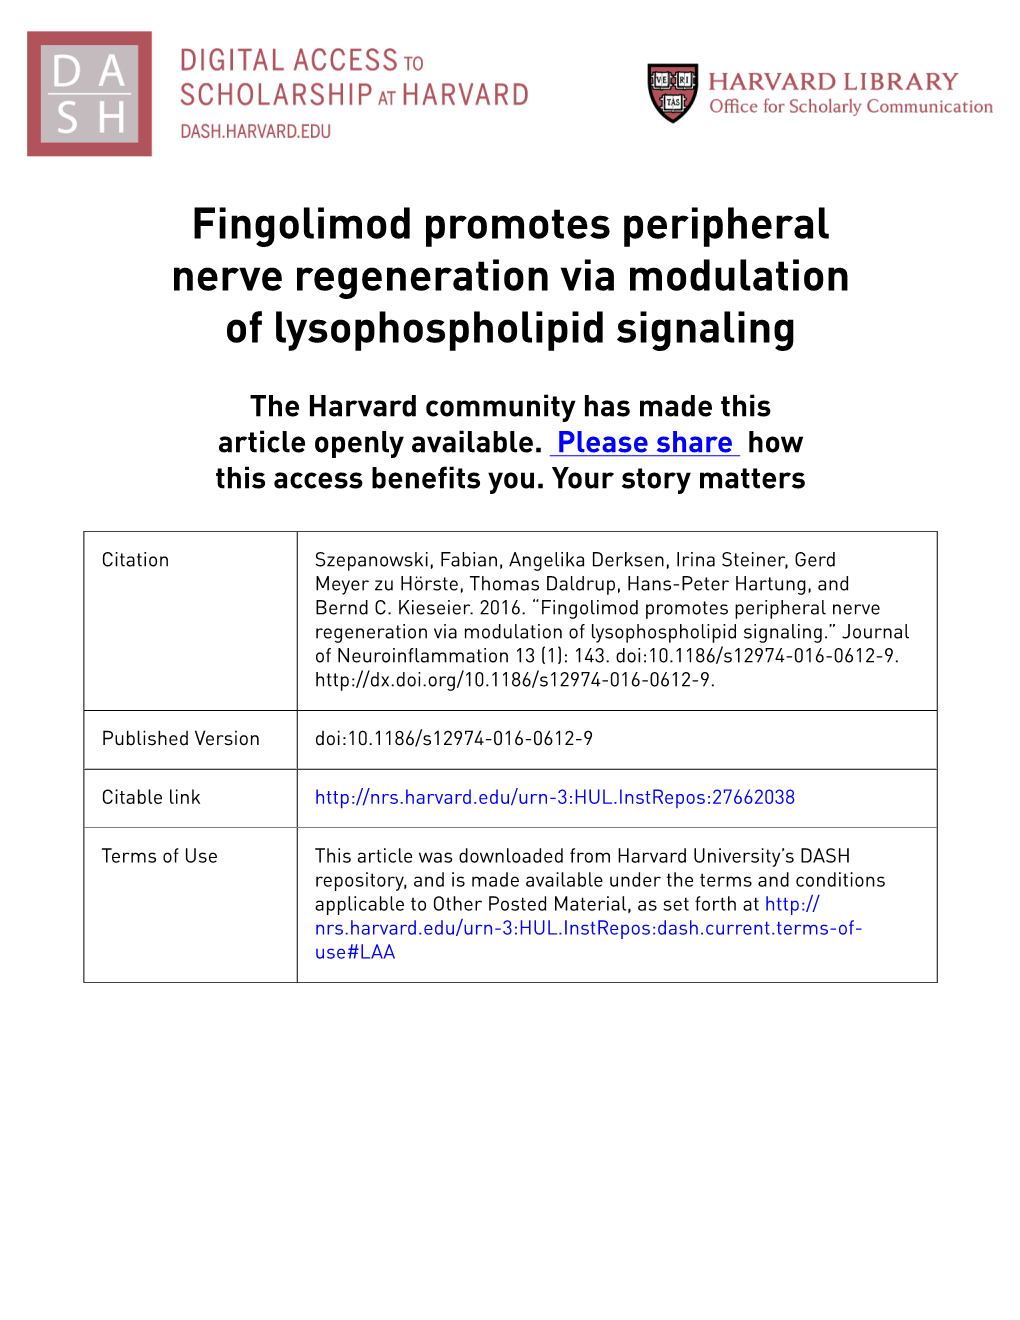 Fingolimod Promotes Peripheral Nerve Regeneration Via Modulation of Lysophospholipid Signaling